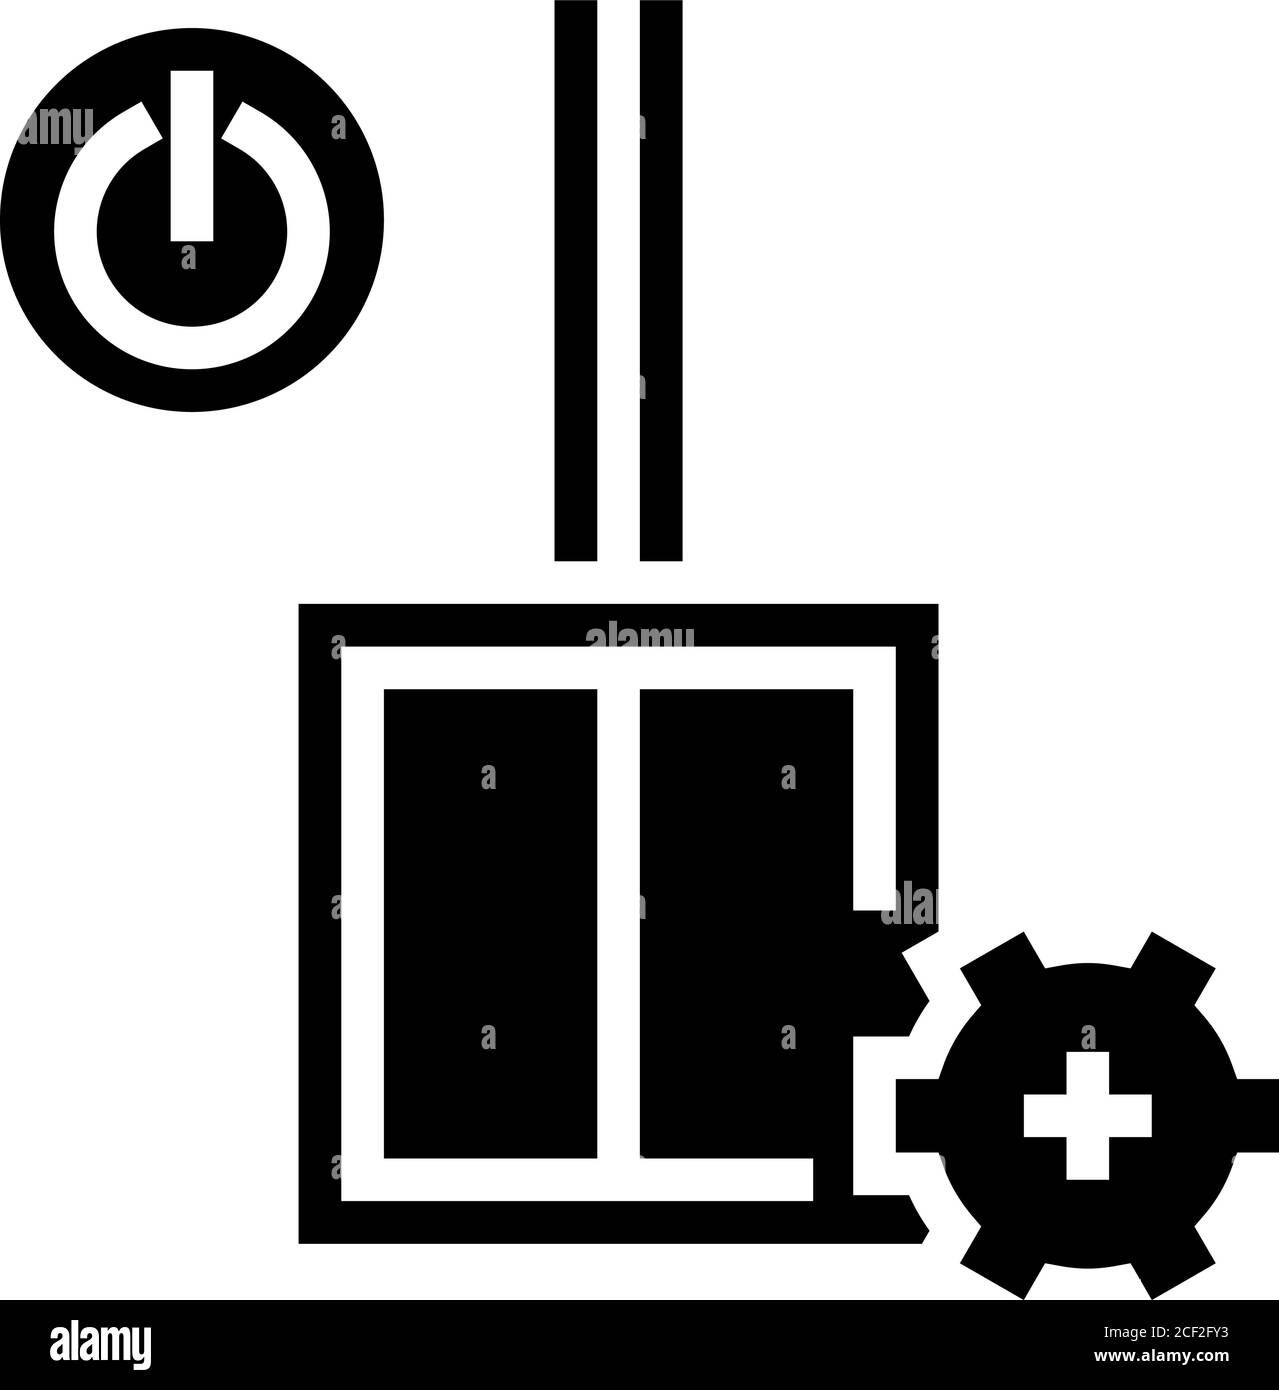 immagine vettoriale dell'icona glifo di installazione dello switch Illustrazione Vettoriale